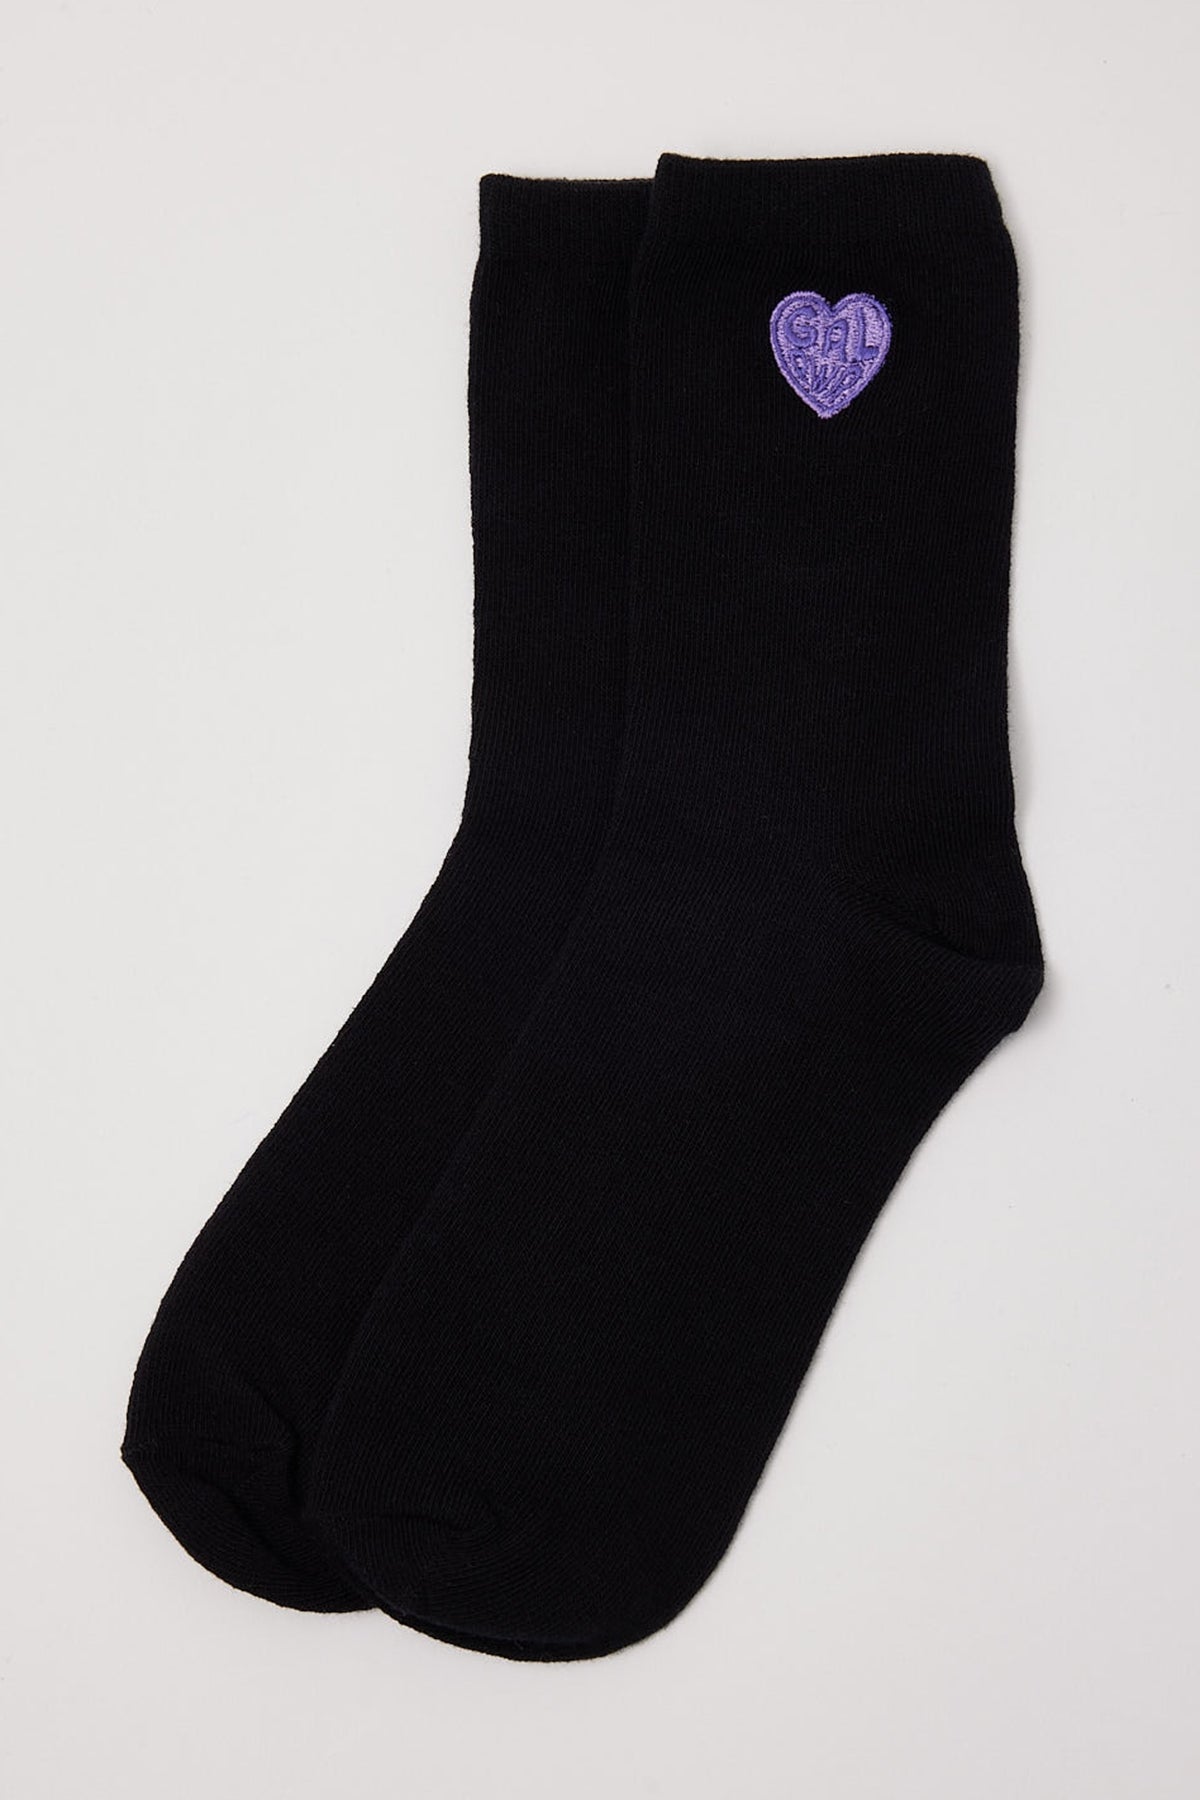 Token Girl Power Embroidered Sock Black